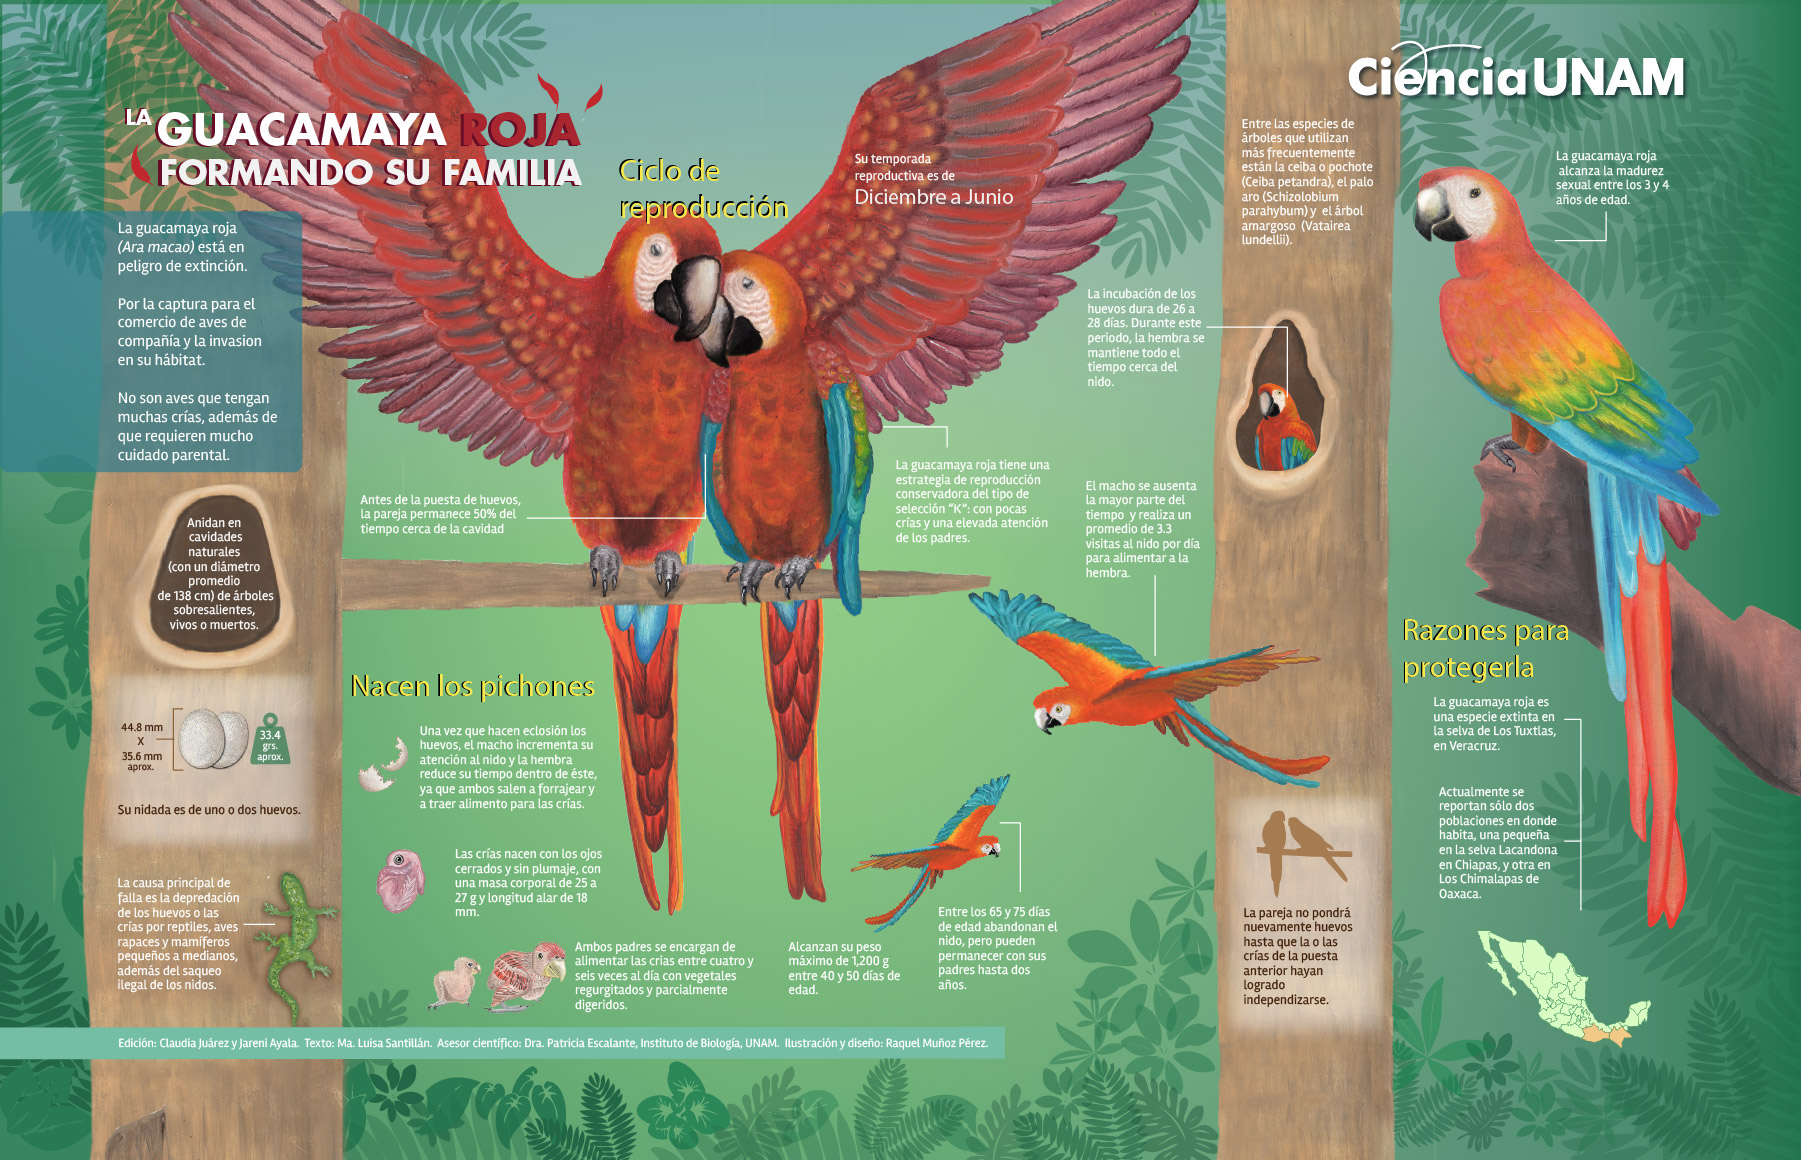 La guacamaya roja formando su familia - Ciencia UNAM